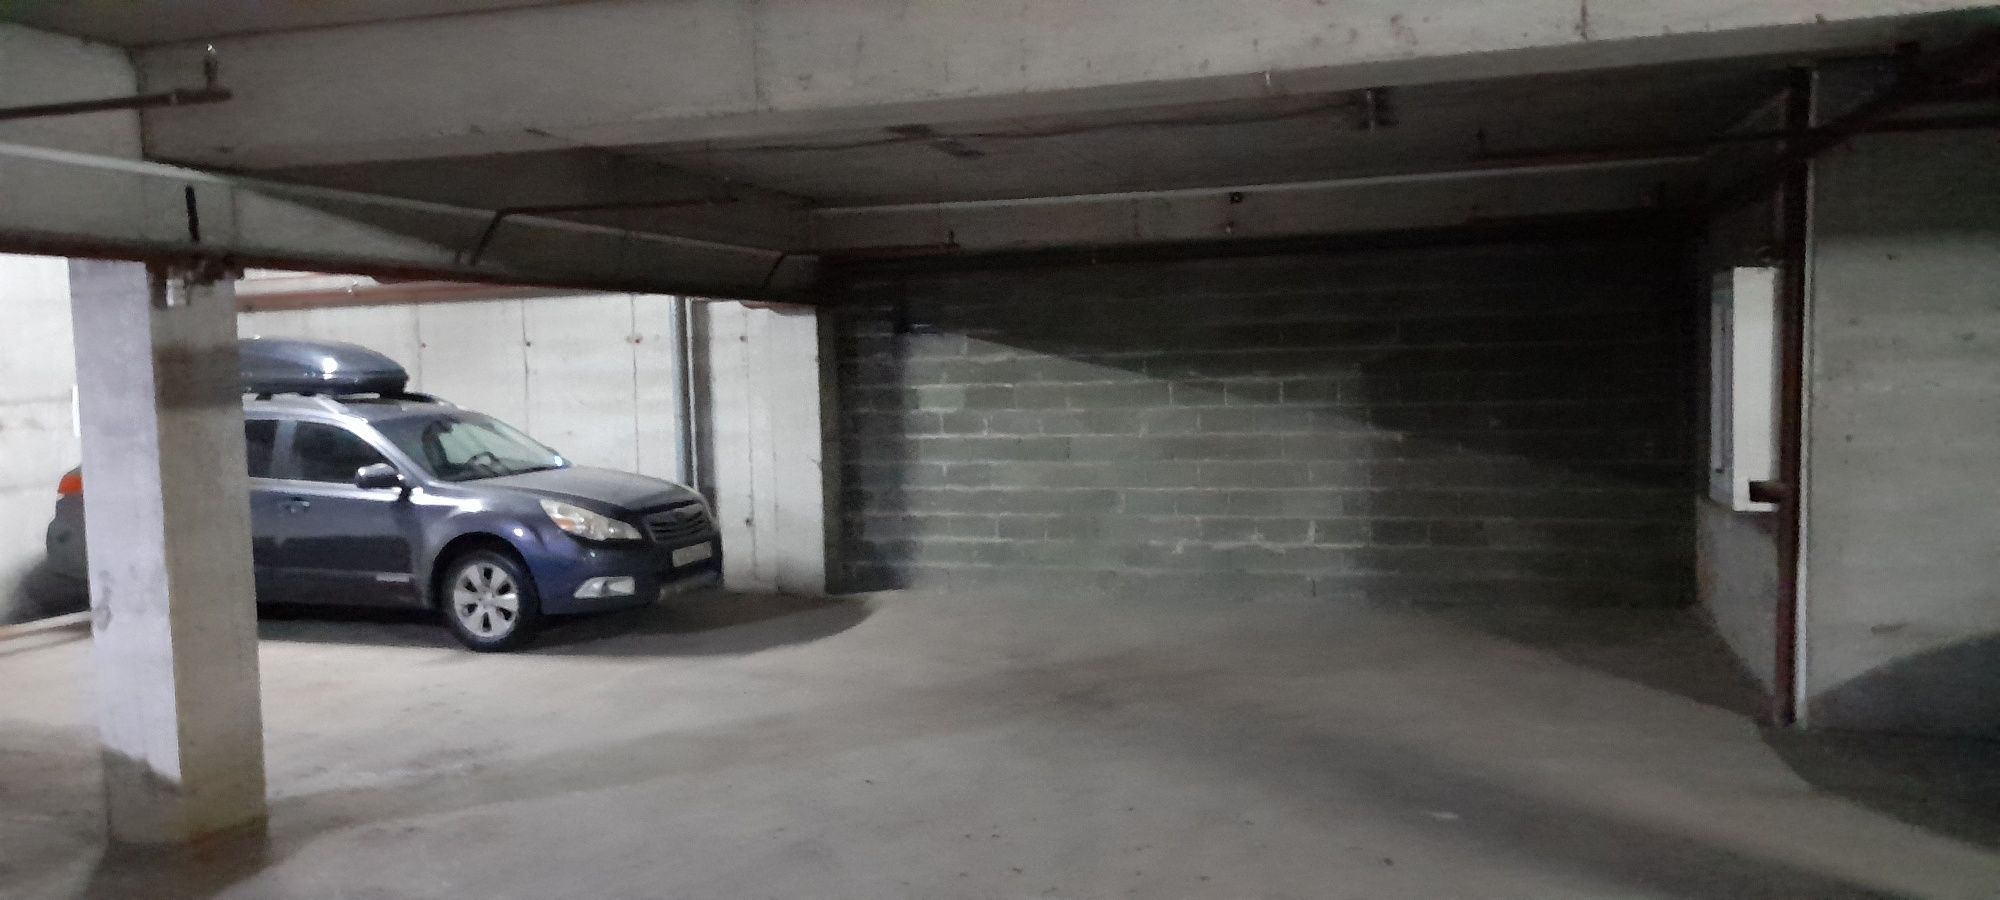 Паркинг, парковачное место, гараж